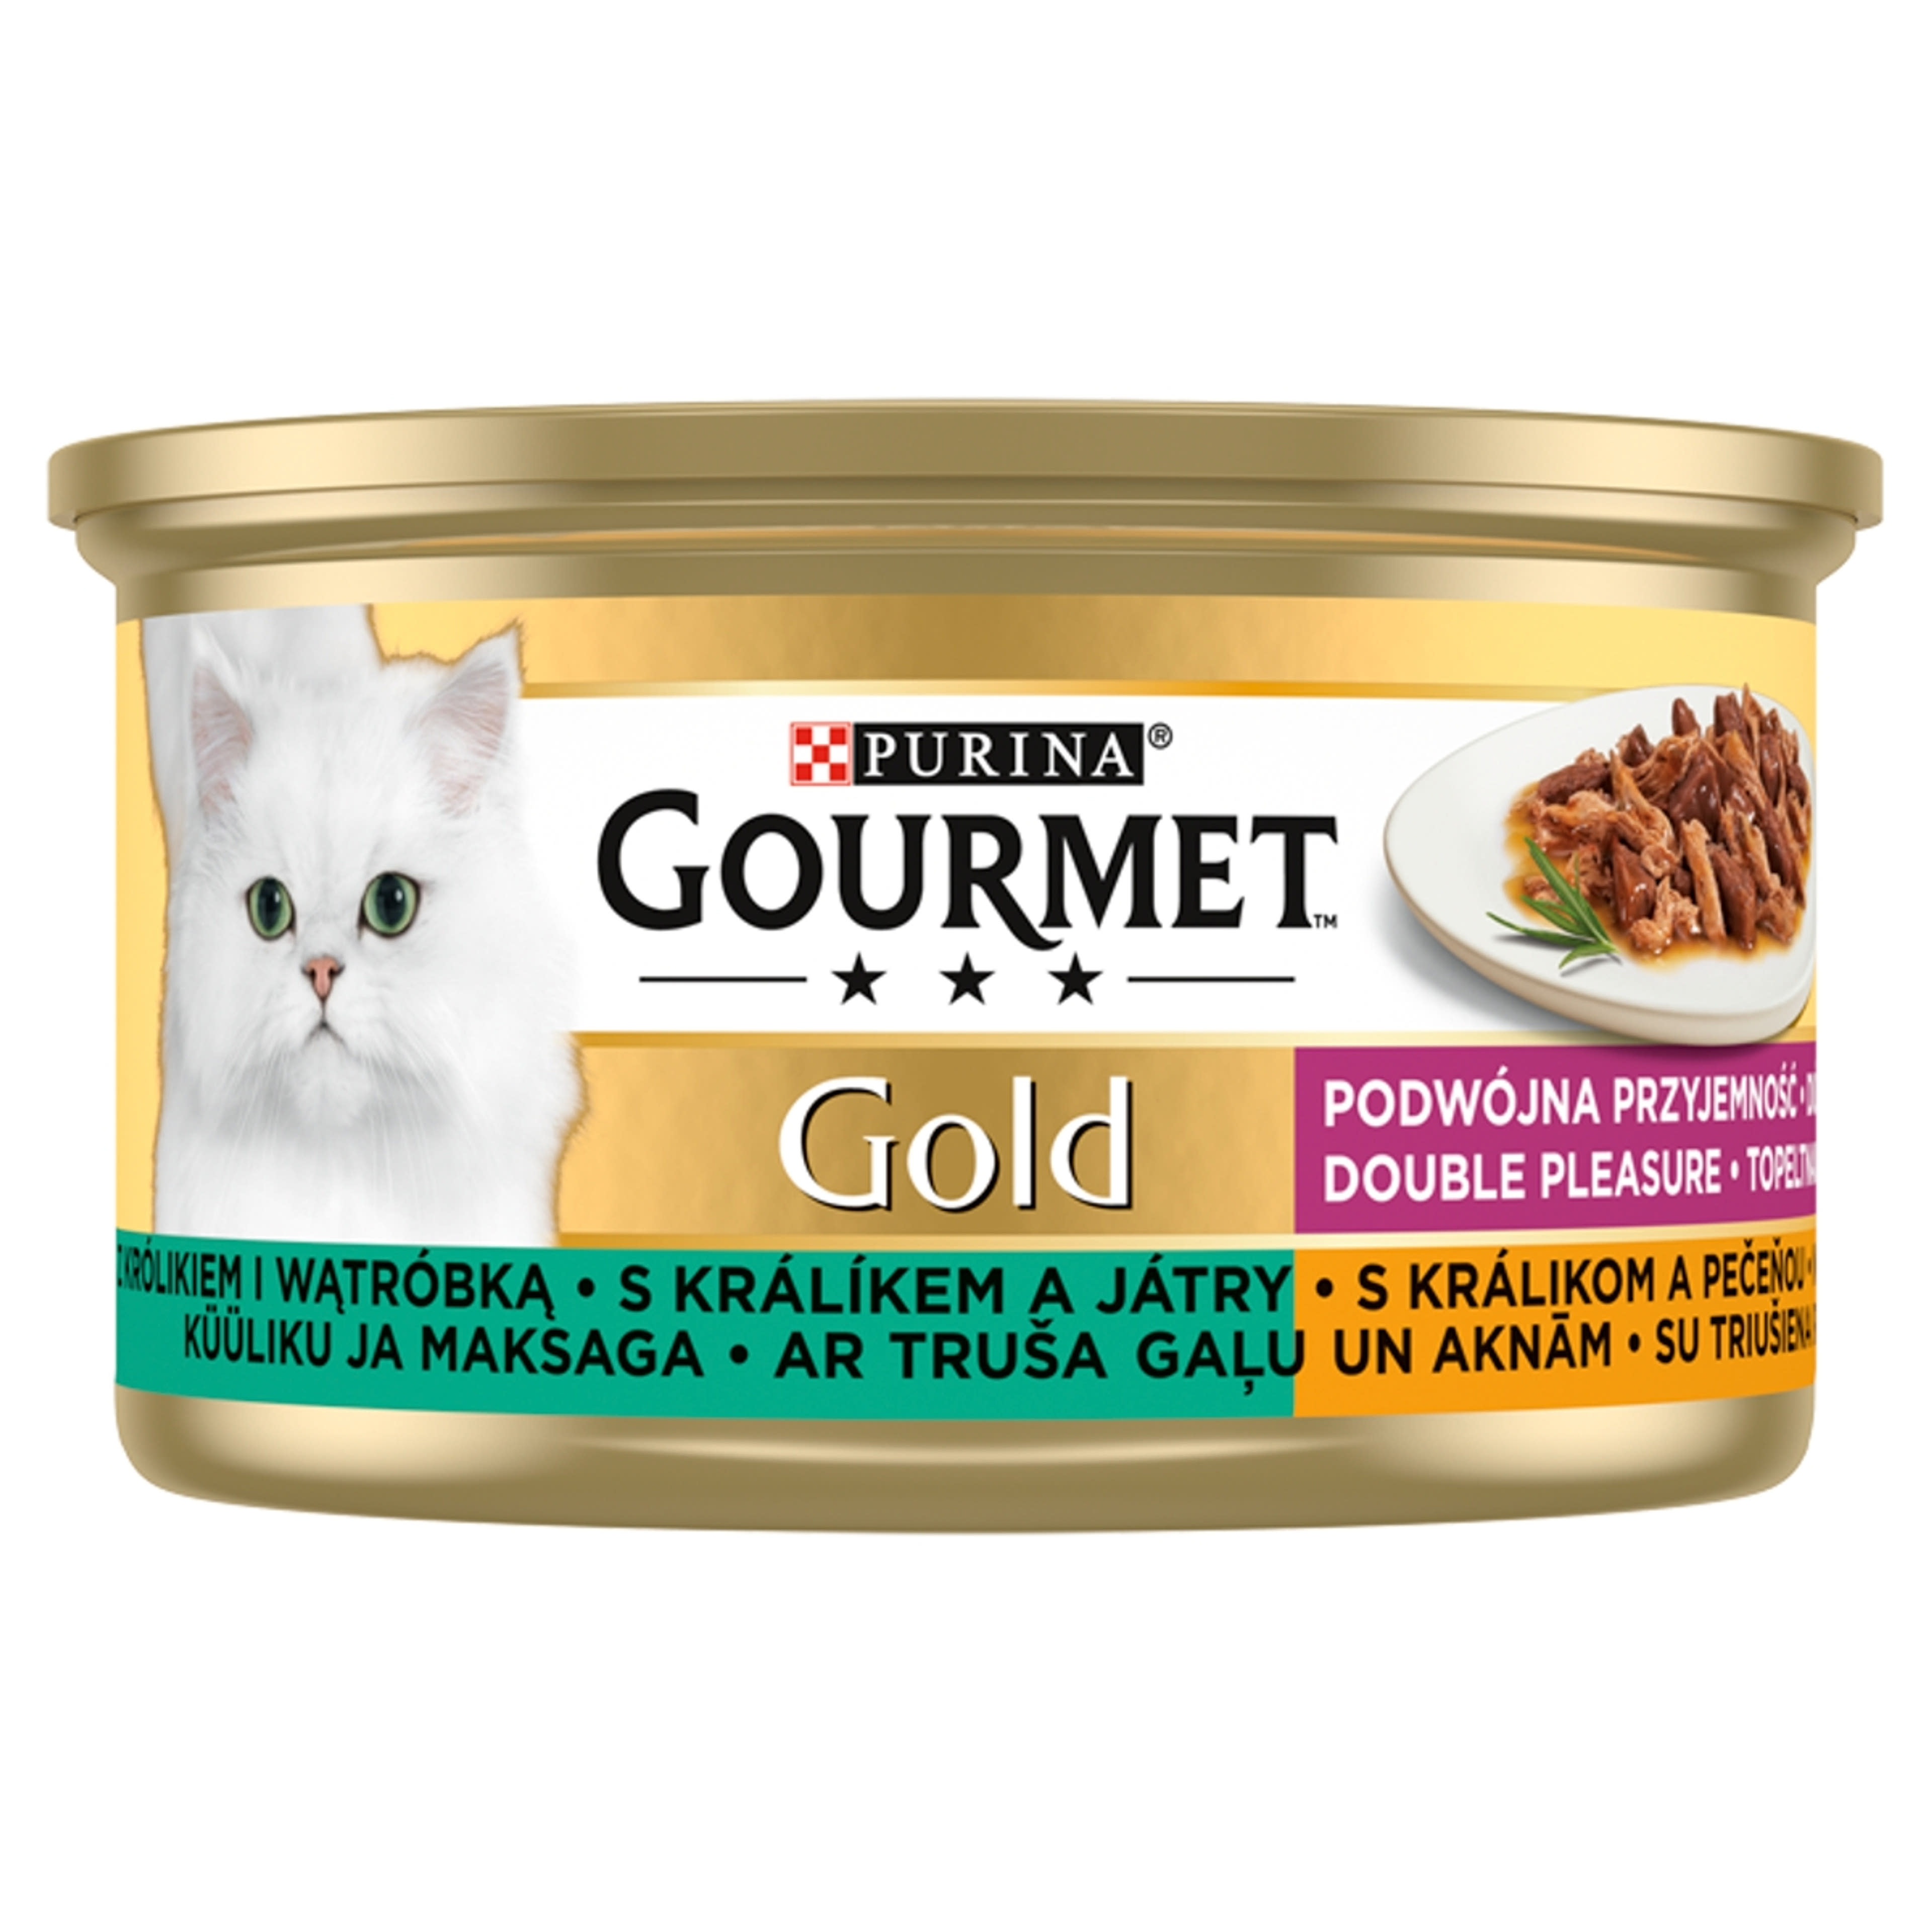 Gourmet Gold felnőtt teljes értékű konzerv macskáknak, nyúllal és májjal - 85 g